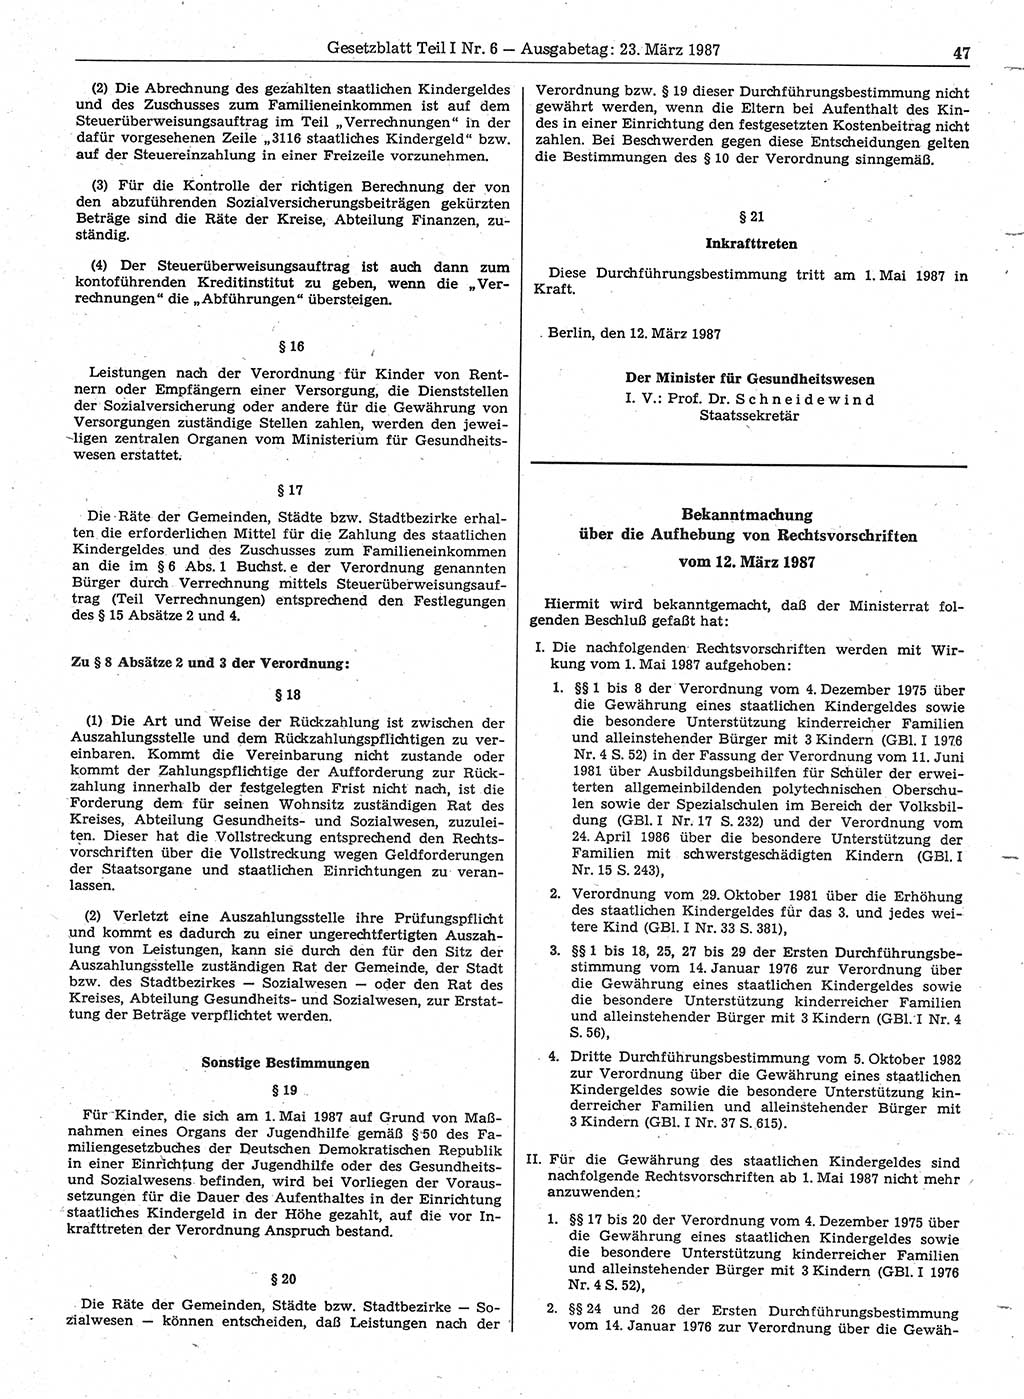 Gesetzblatt (GBl.) der Deutschen Demokratischen Republik (DDR) Teil Ⅰ 1987, Seite 47 (GBl. DDR Ⅰ 1987, S. 47)